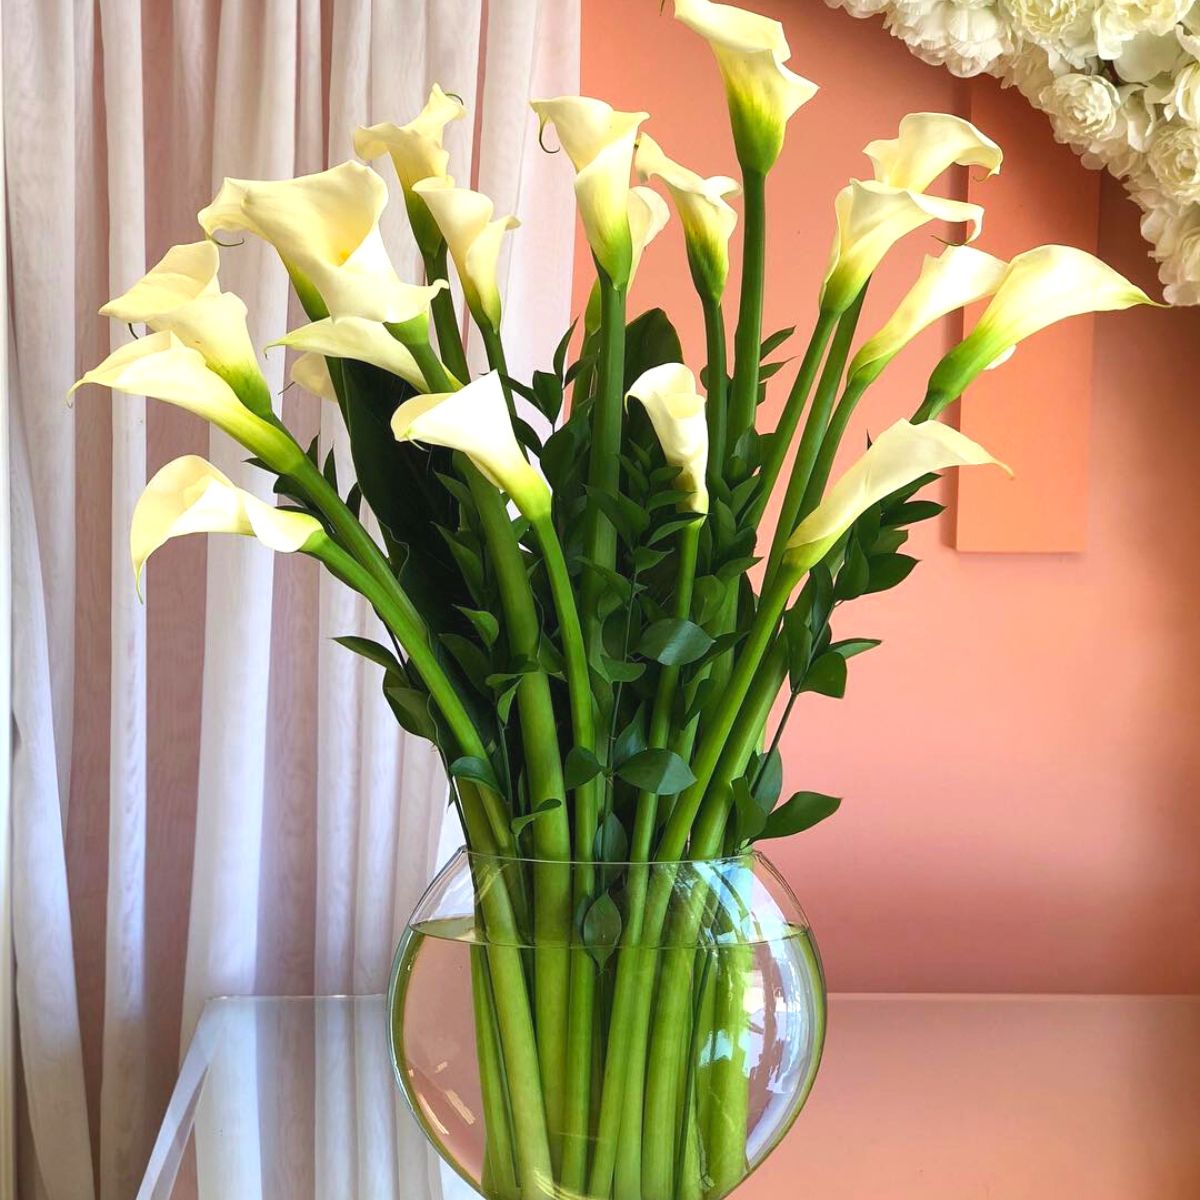 White callas in a transparent vase